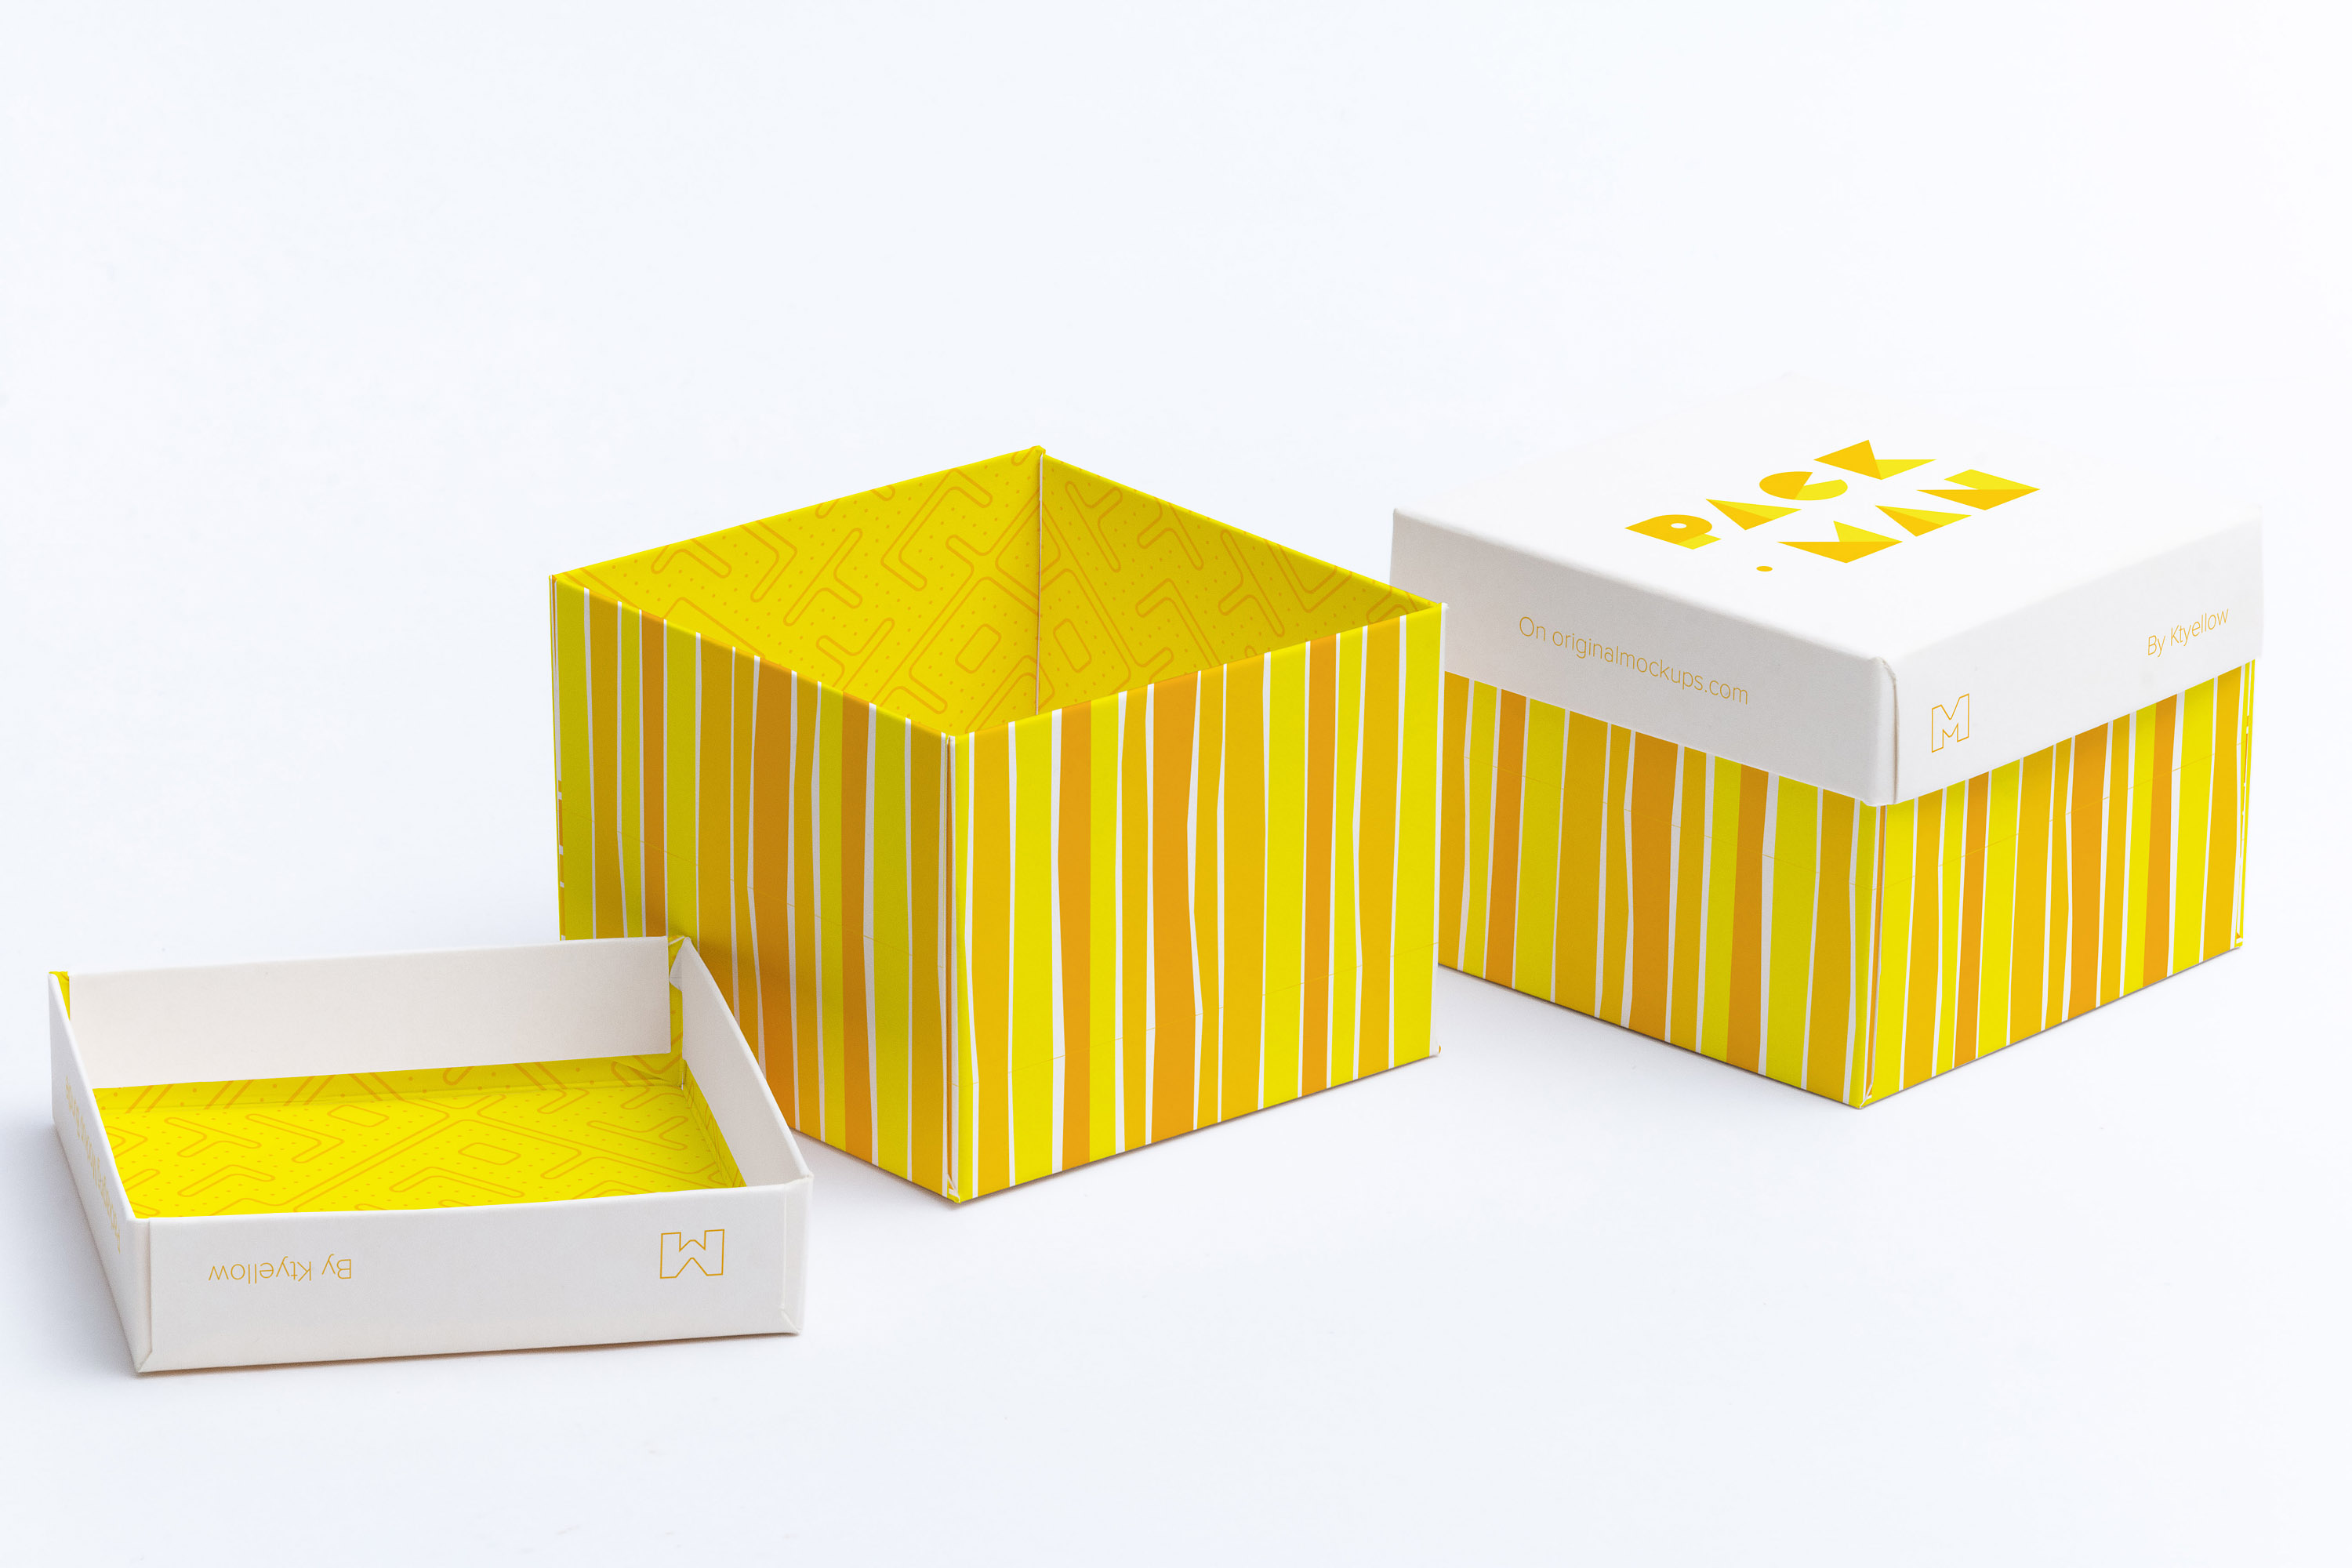 立方体礼品盒包装设计样机模板02 Cube Gift Box Mockup 02插图